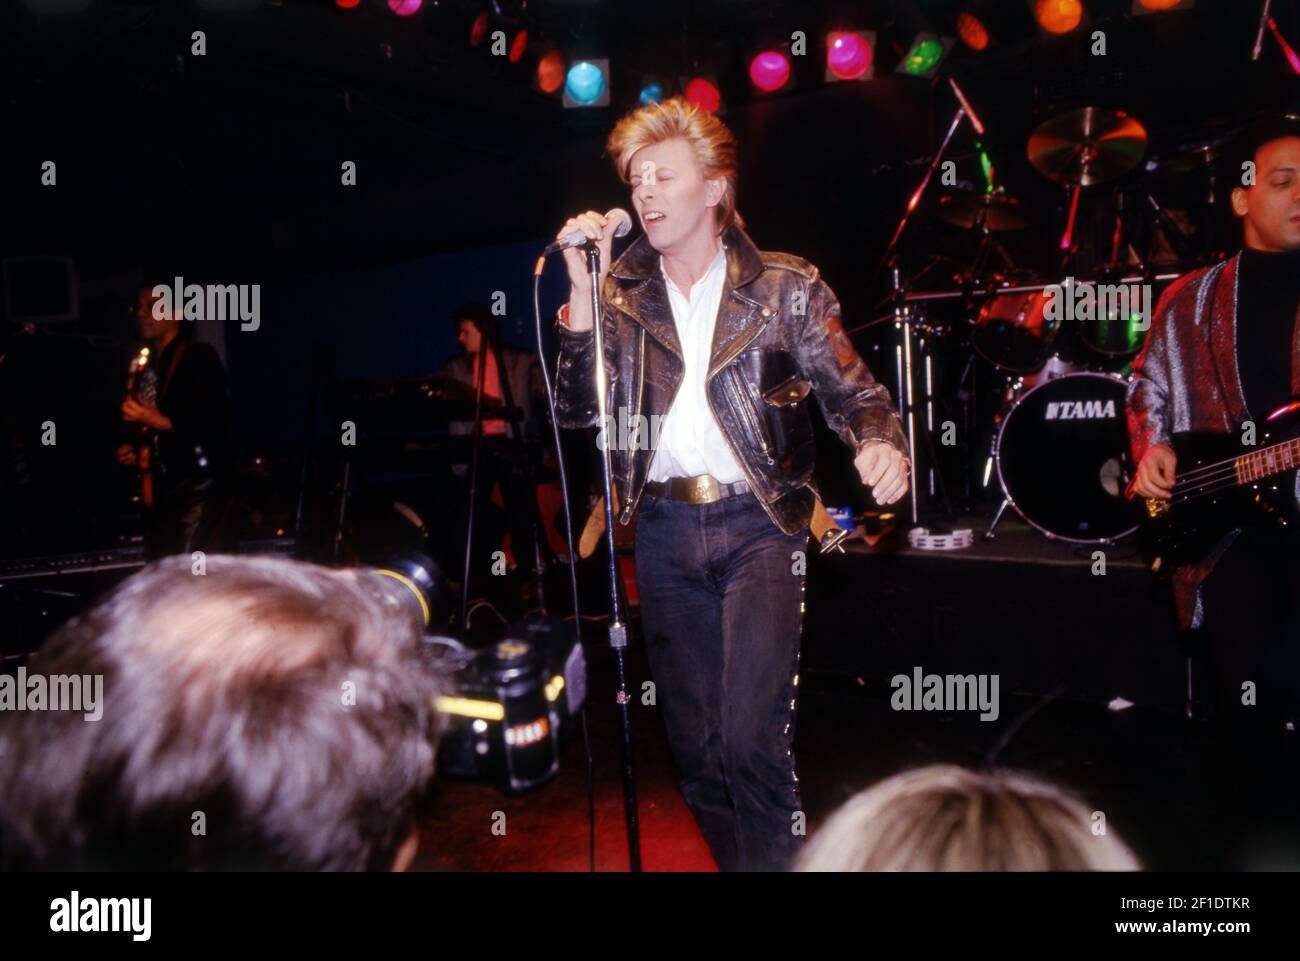 18 de marzo de 1987; Nueva York, NY, EE.UU.; El cantante de rock David Bowie actúa en una conferencia de prensa en el Club Cat en Greenwich Village, Nueva York, el 18 de marzo de 1987. La estrella inglesa del rock anunciaba una gira de seis meses a 100 ciudades, titulada 'Luz de luna serosa', programada para estar en Rotterdam. Crédito obligatorio: Robert S. Townsend/NorthJersey.com via USA TODAY NETWORK/Sipa USA Foto de stock